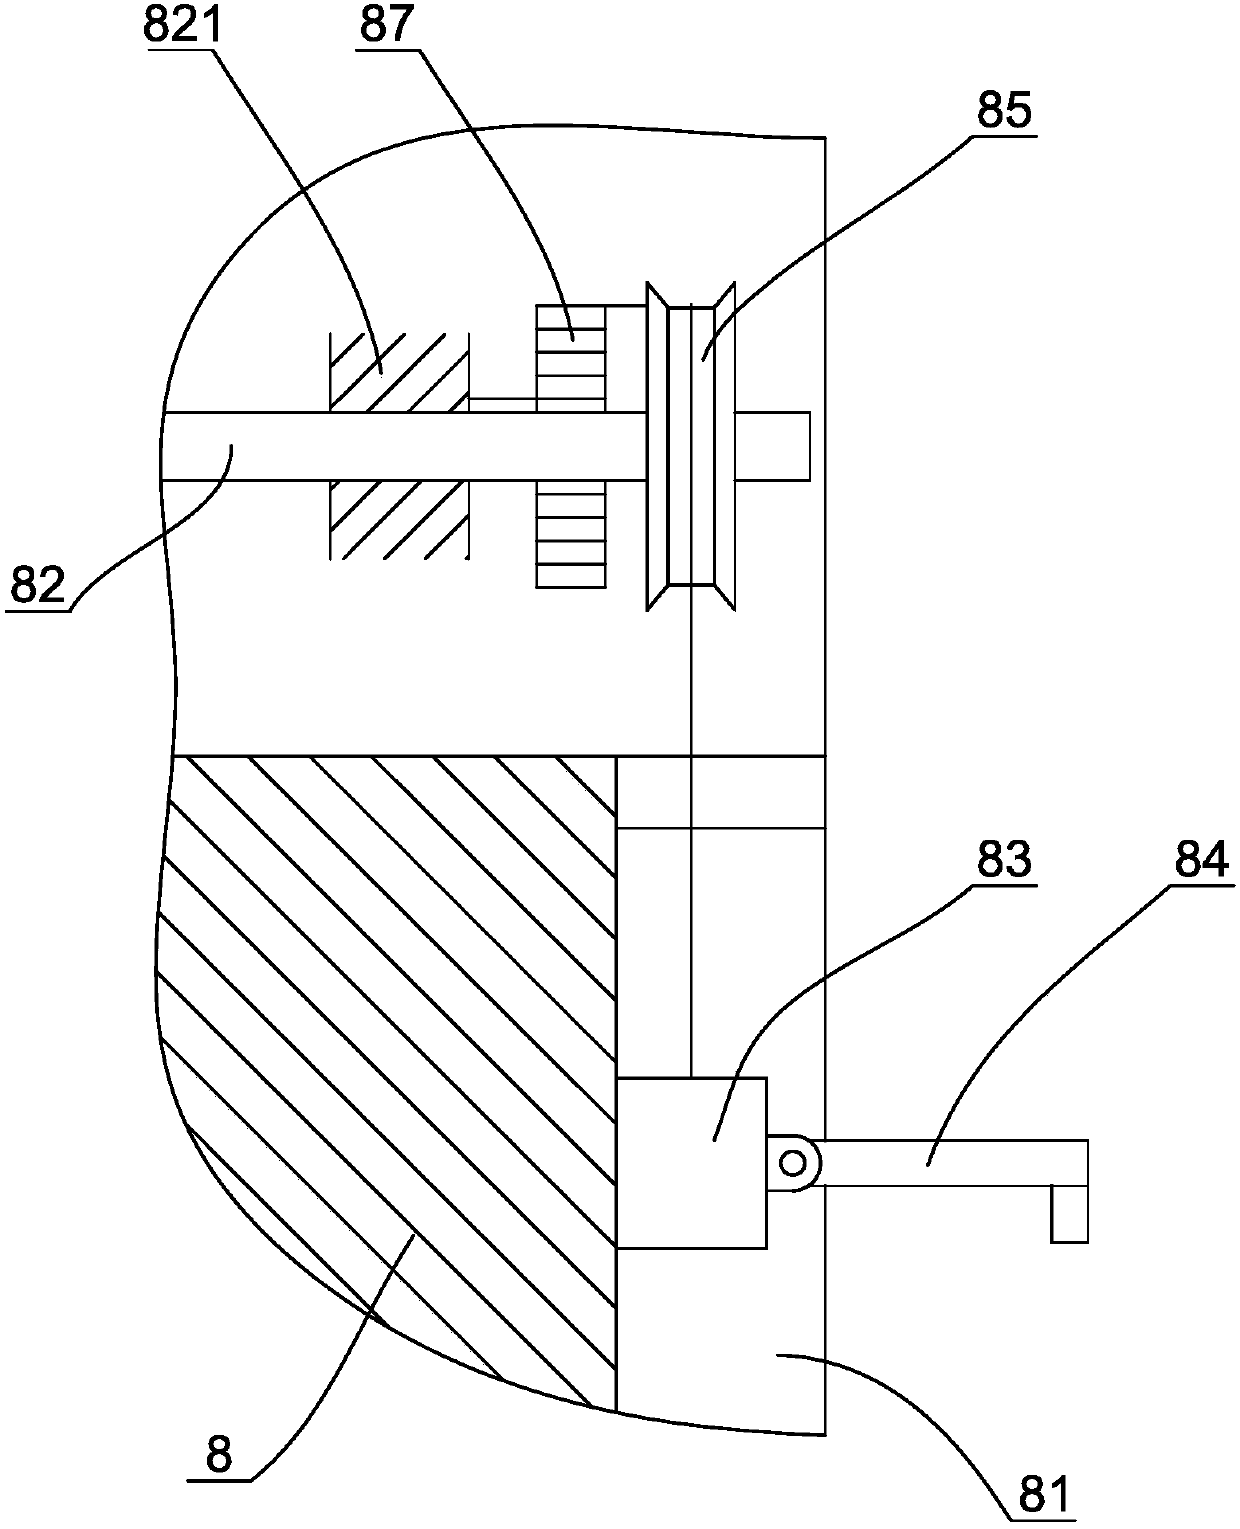 Elevator traction mechanism